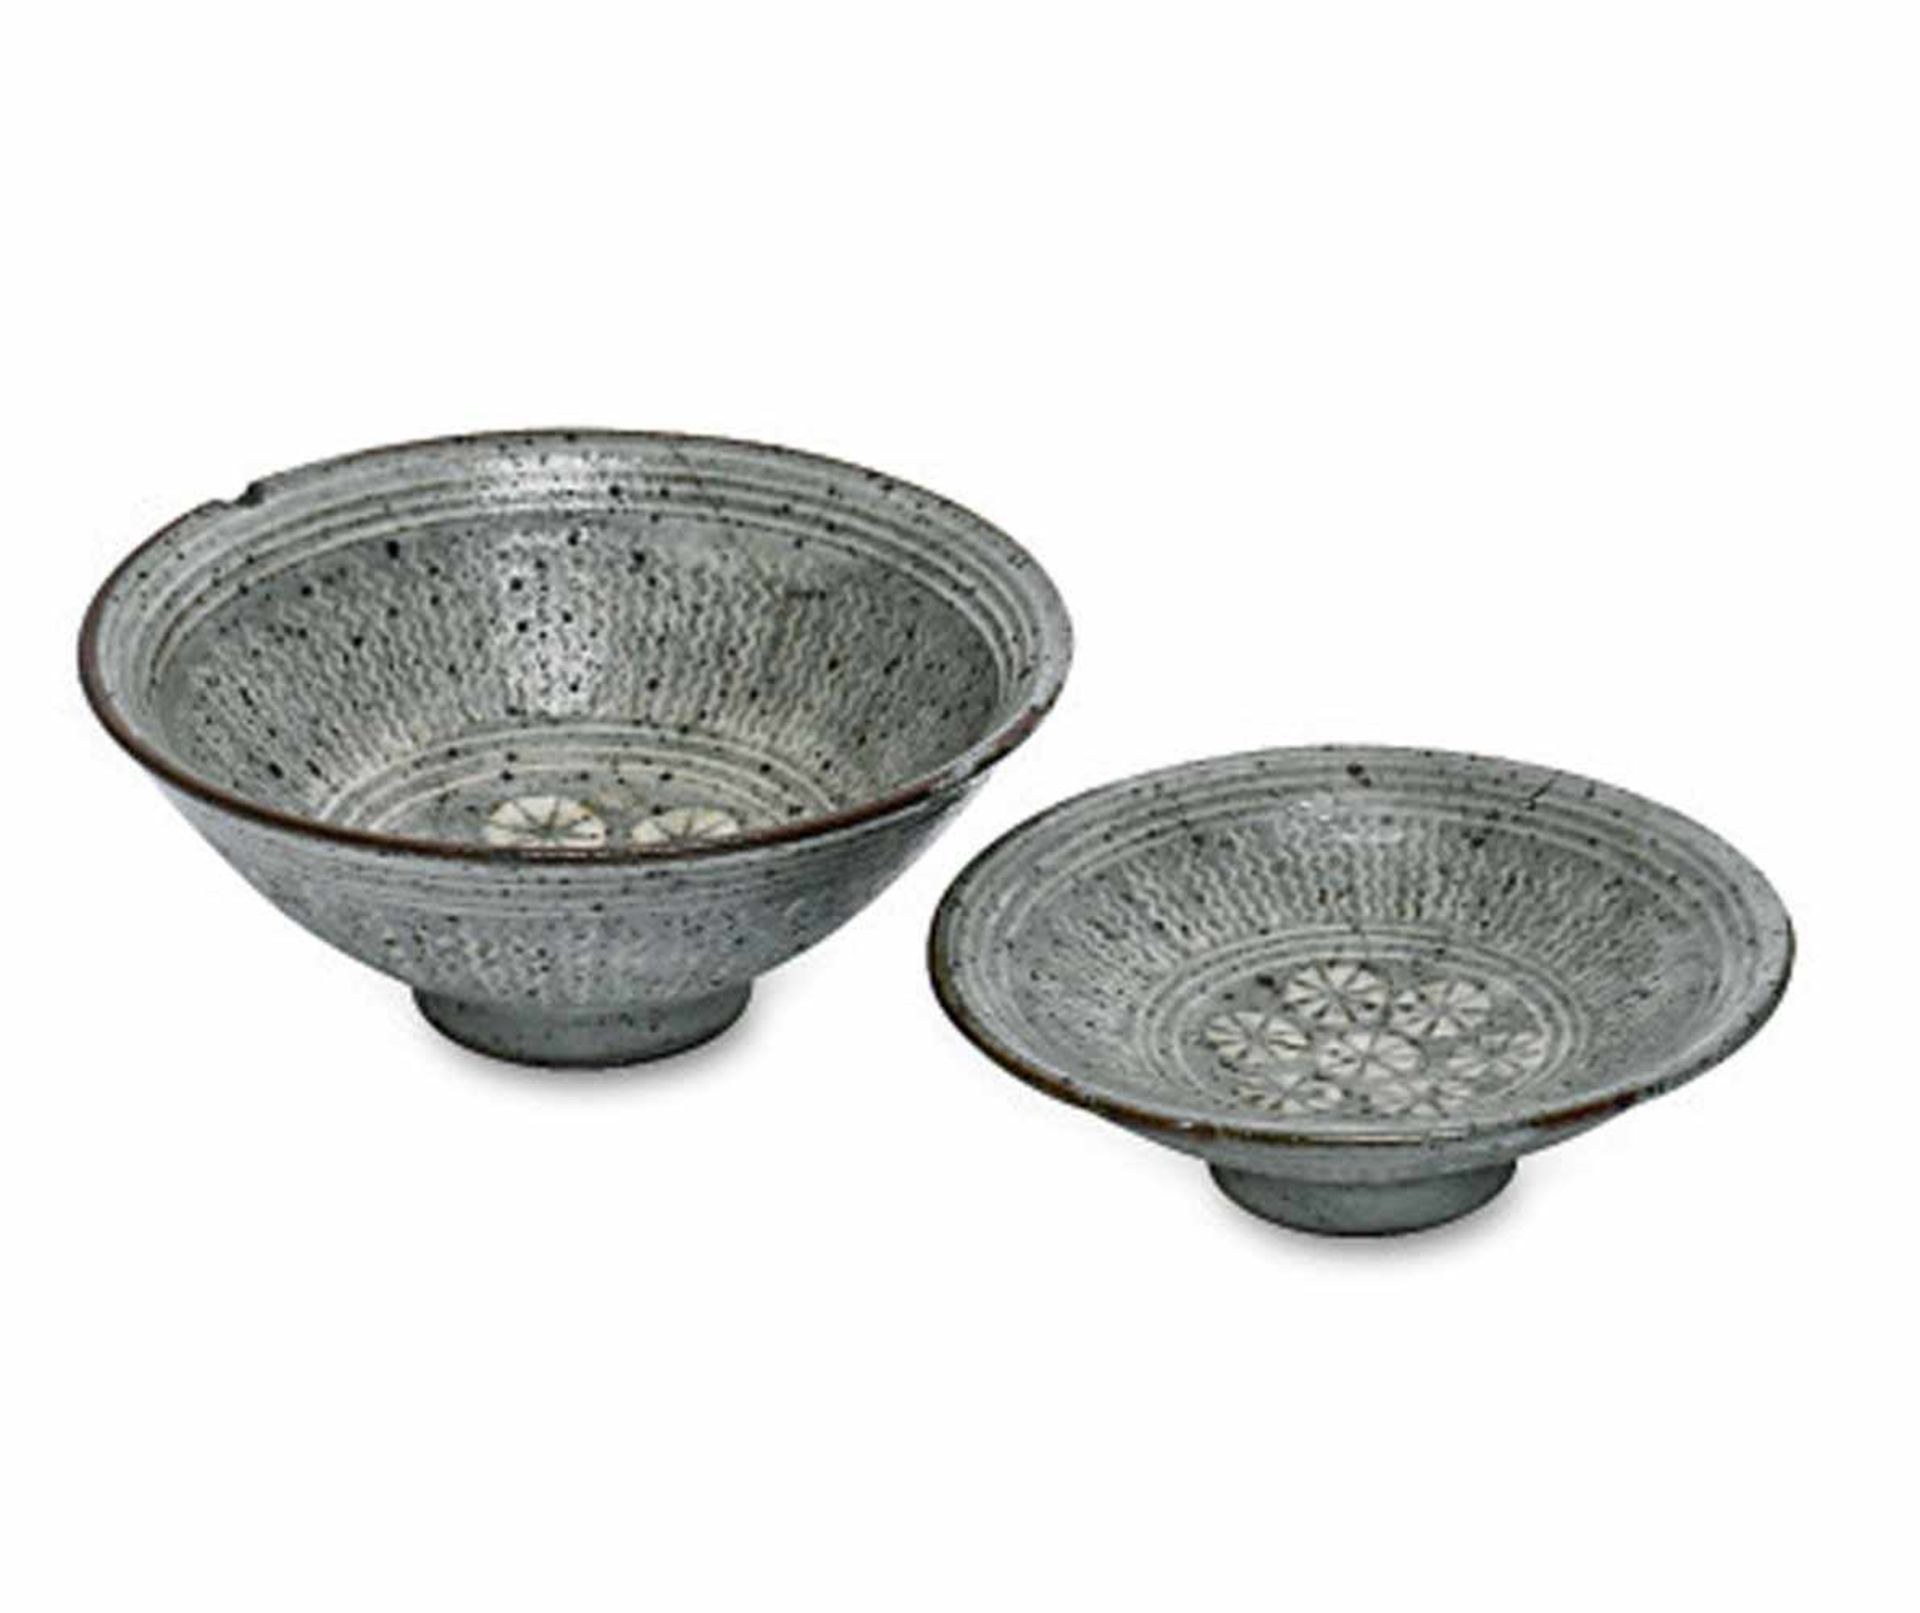 Reisschale mit DeckelKorea, wohl Joseon-Dynastie (1392 - 1910)Steinzeug mit graublauer Glasur und